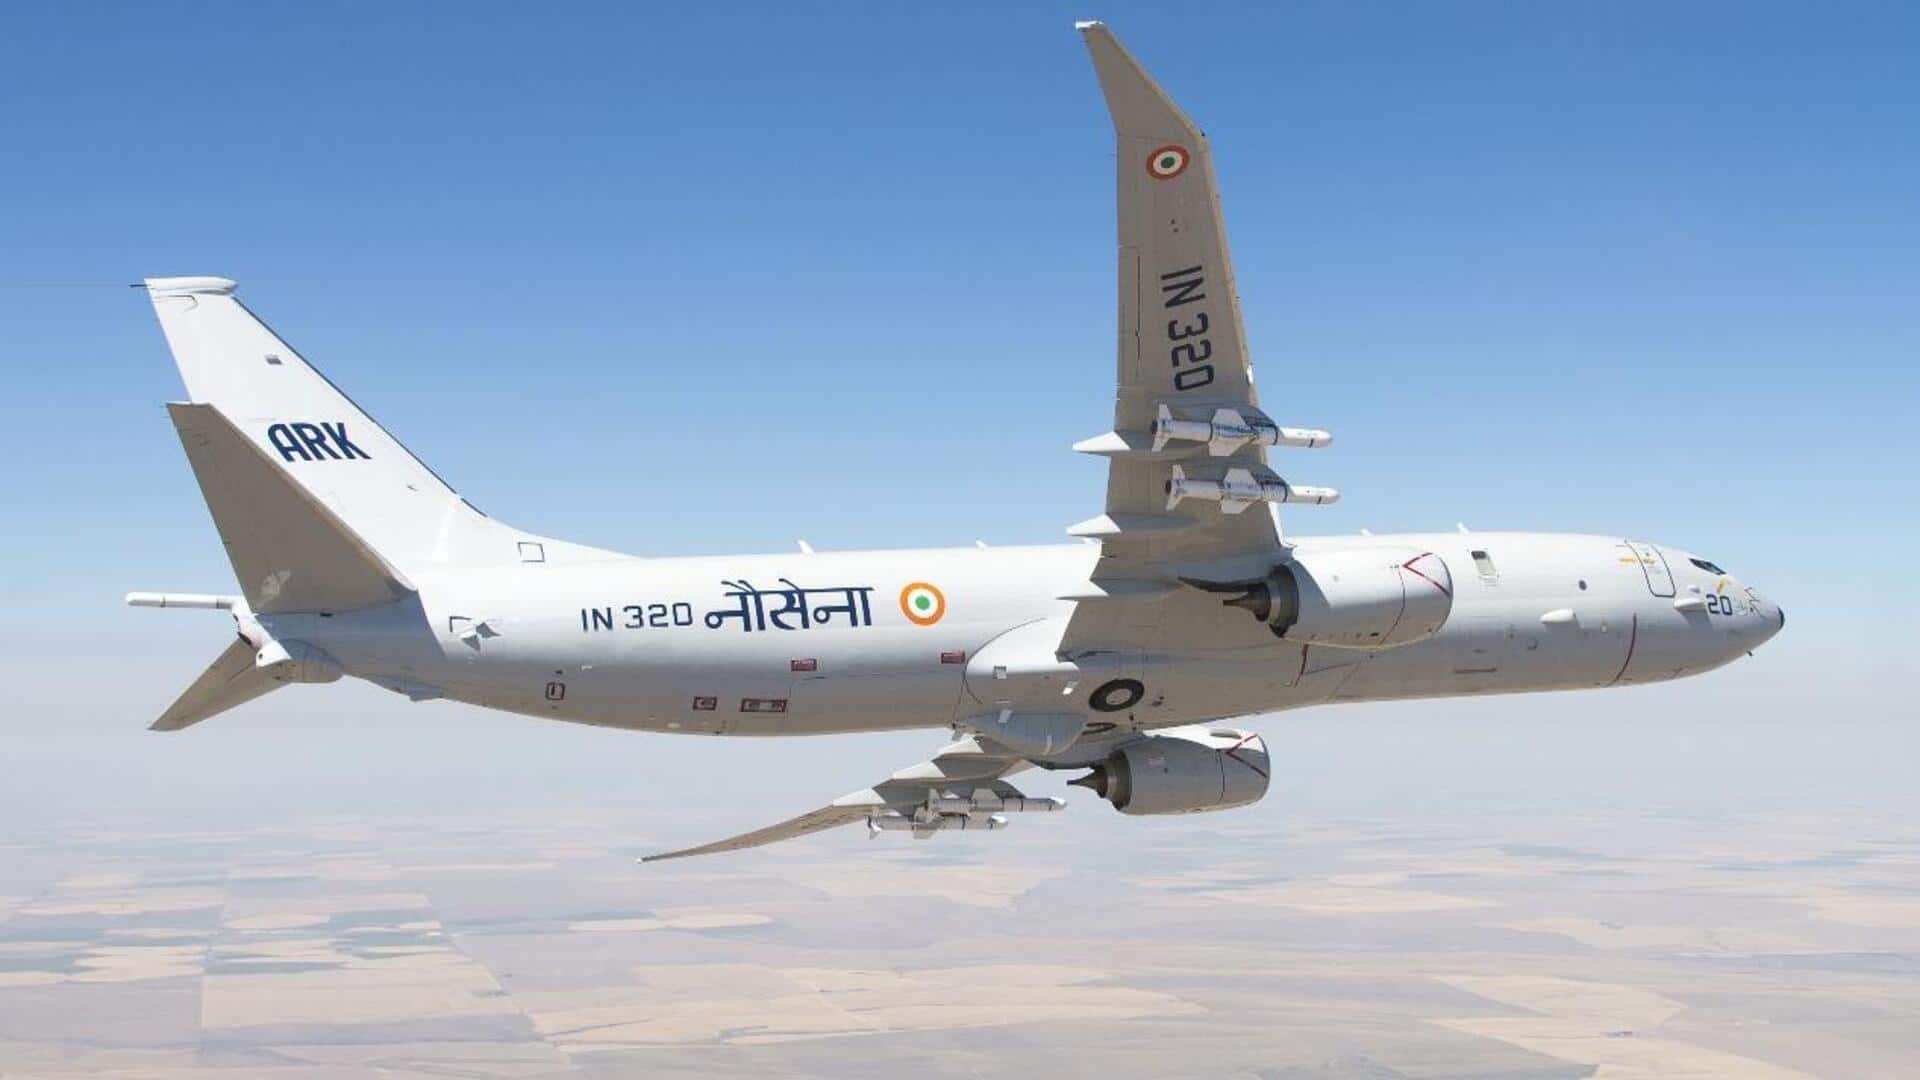 हिंद महासागर में नाव डूबने पर चीन ने मांगी भारत से मदद, नौसेना ने भेजा विमान